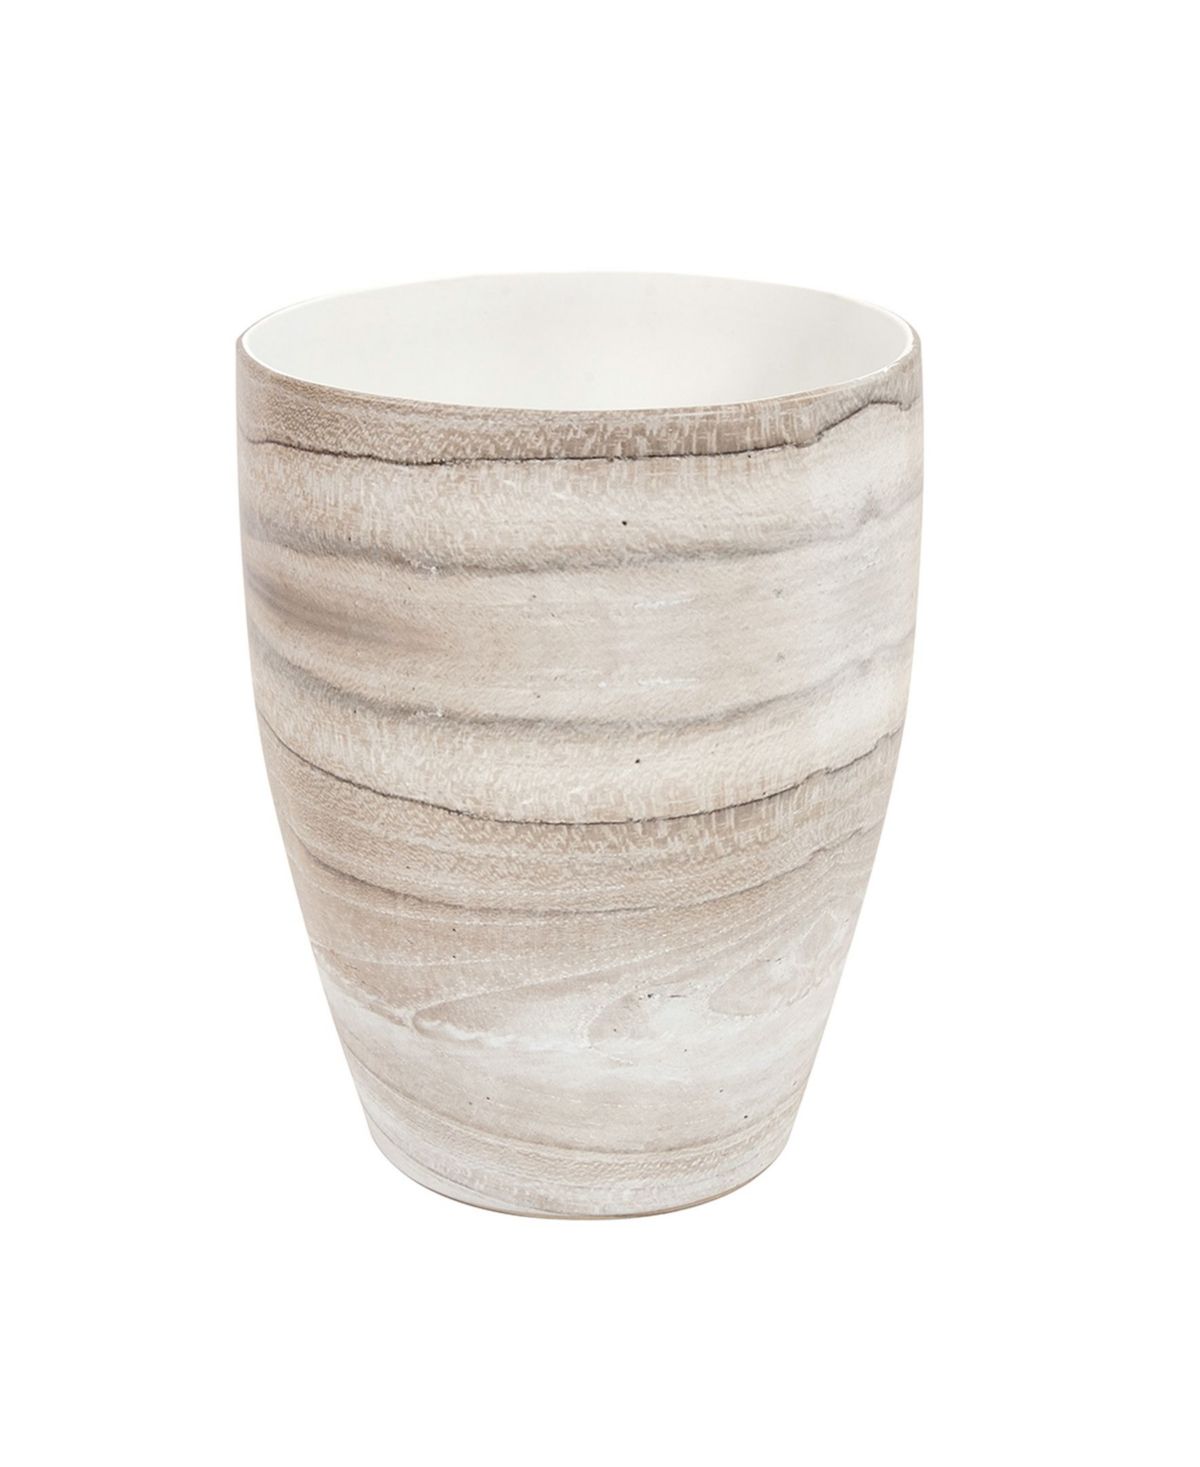 Howard Elliott Desert Sands Tapered Ceramic Vase, Small | Macys (US)